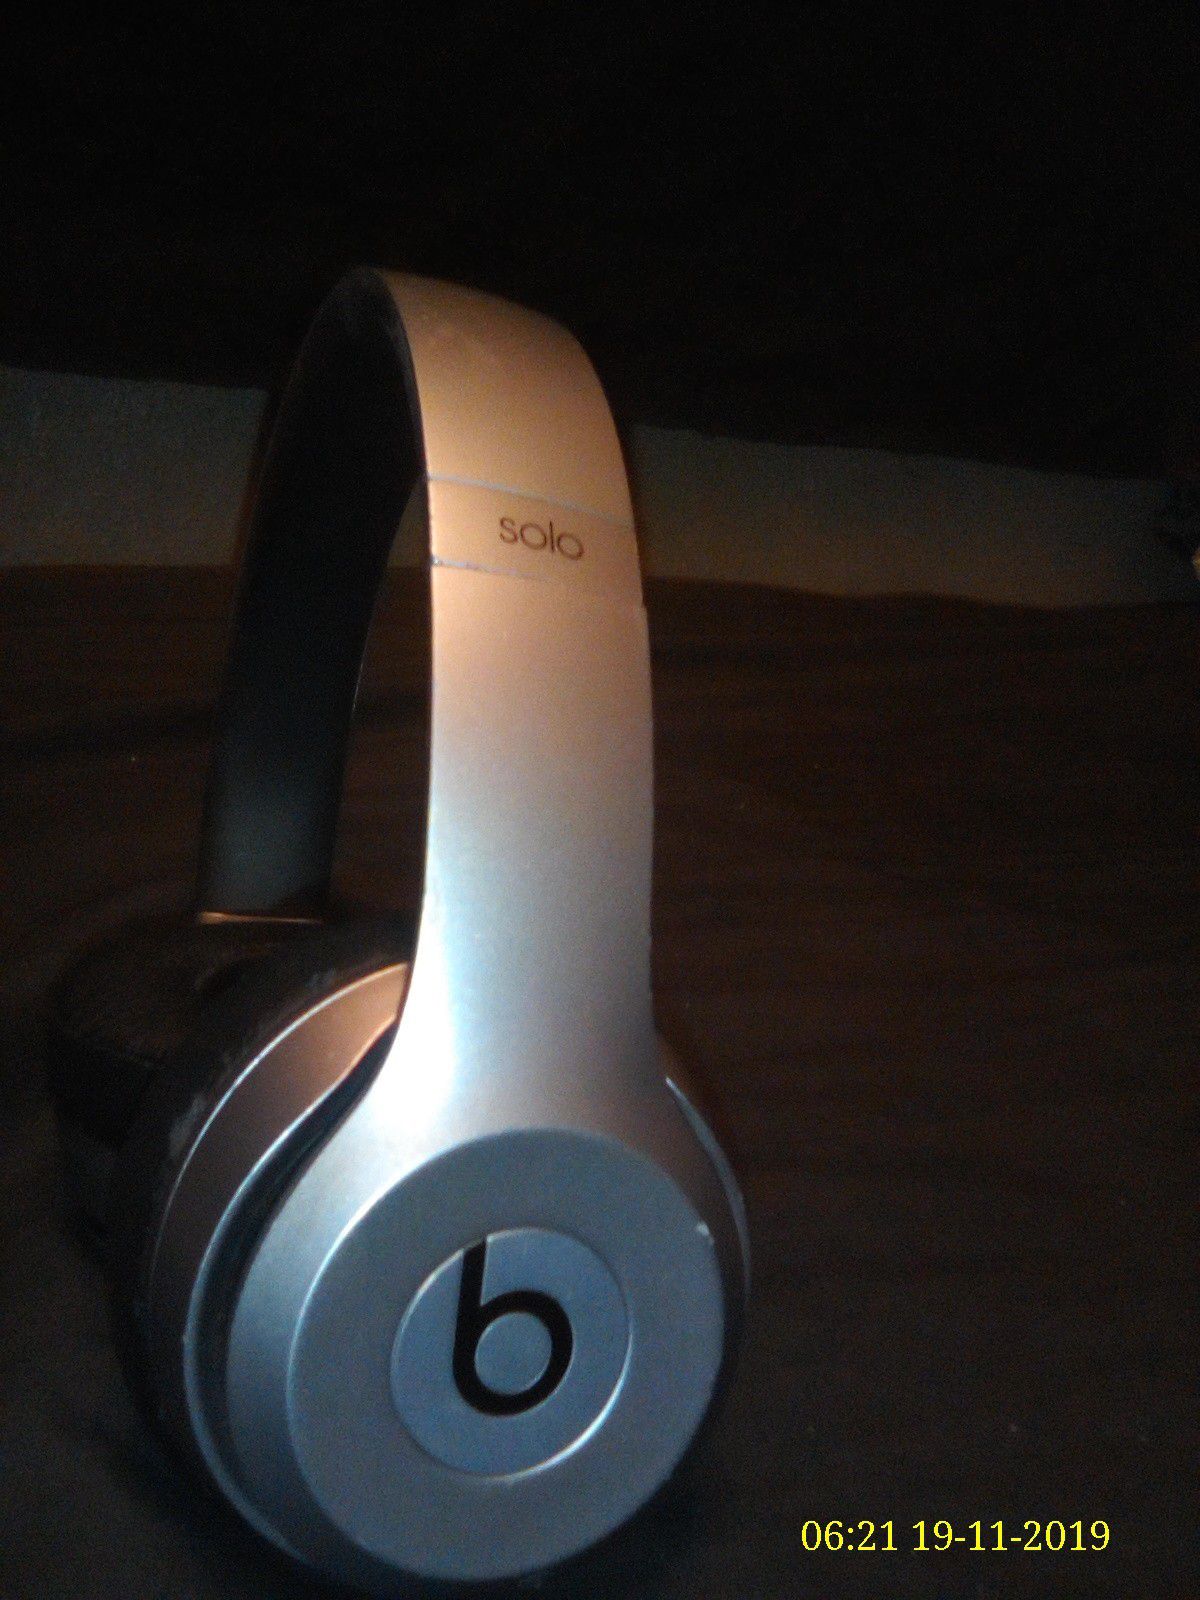 Beats Solo wireless headphones by Dre